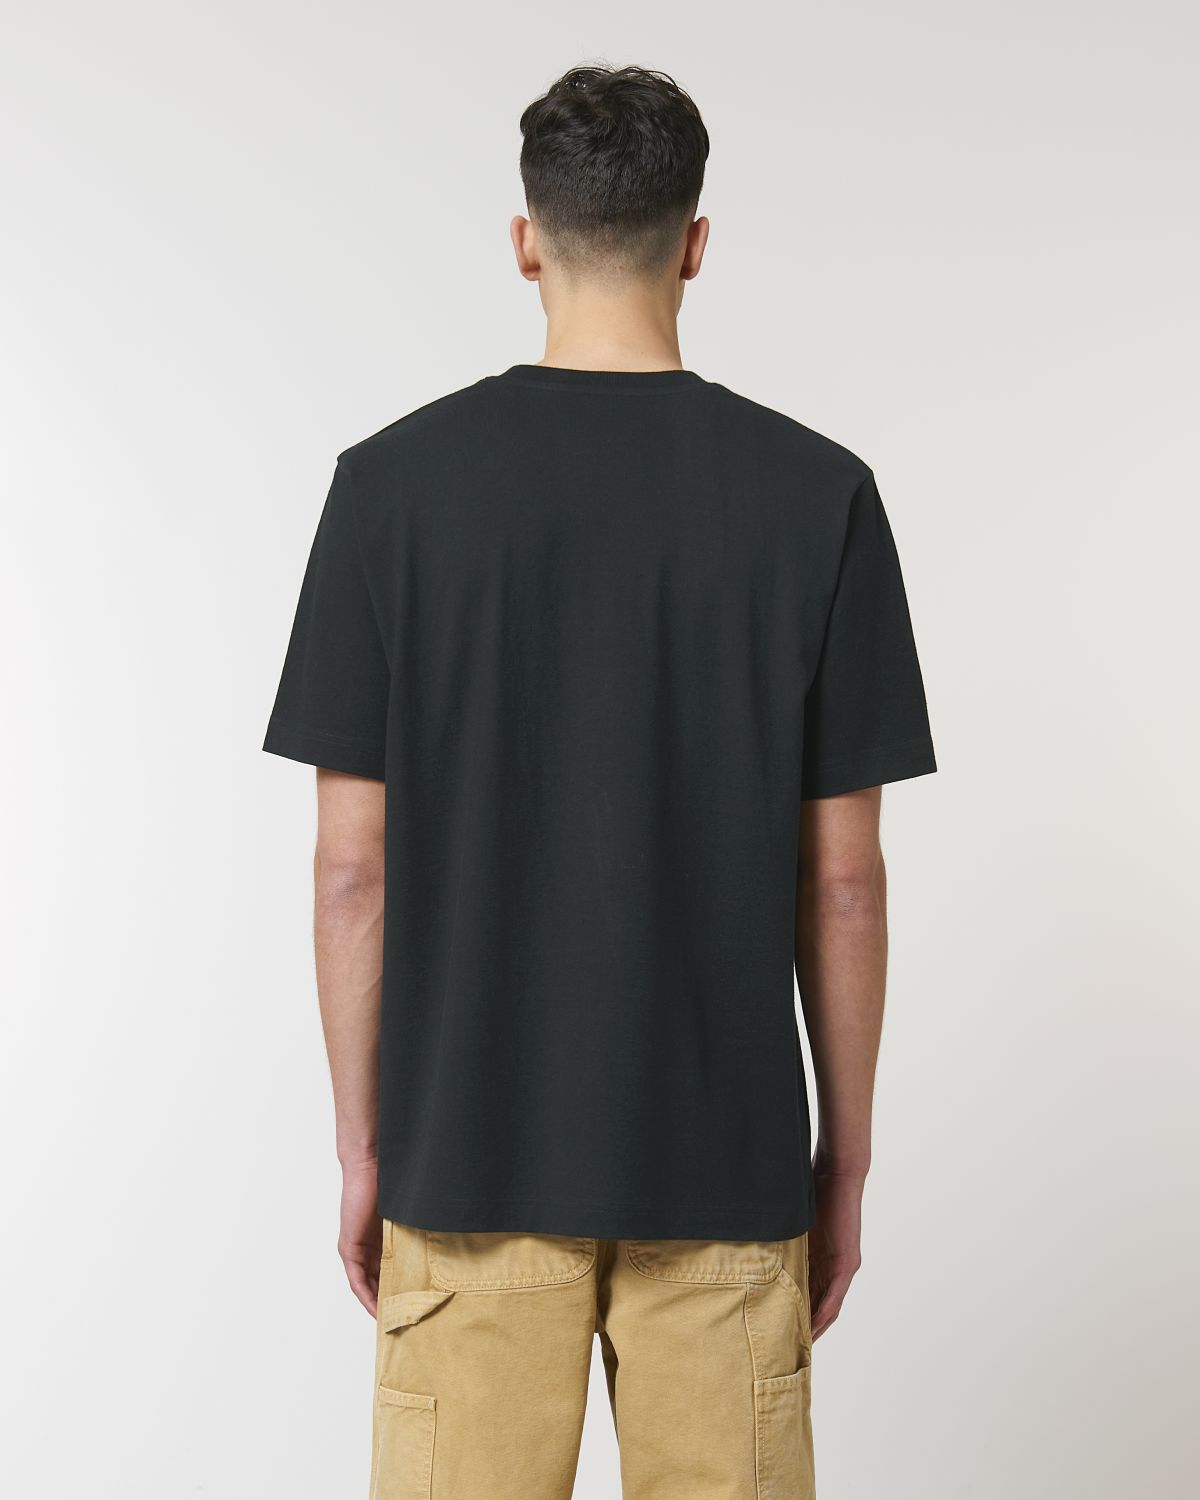 Intouchable T-Shirt Black